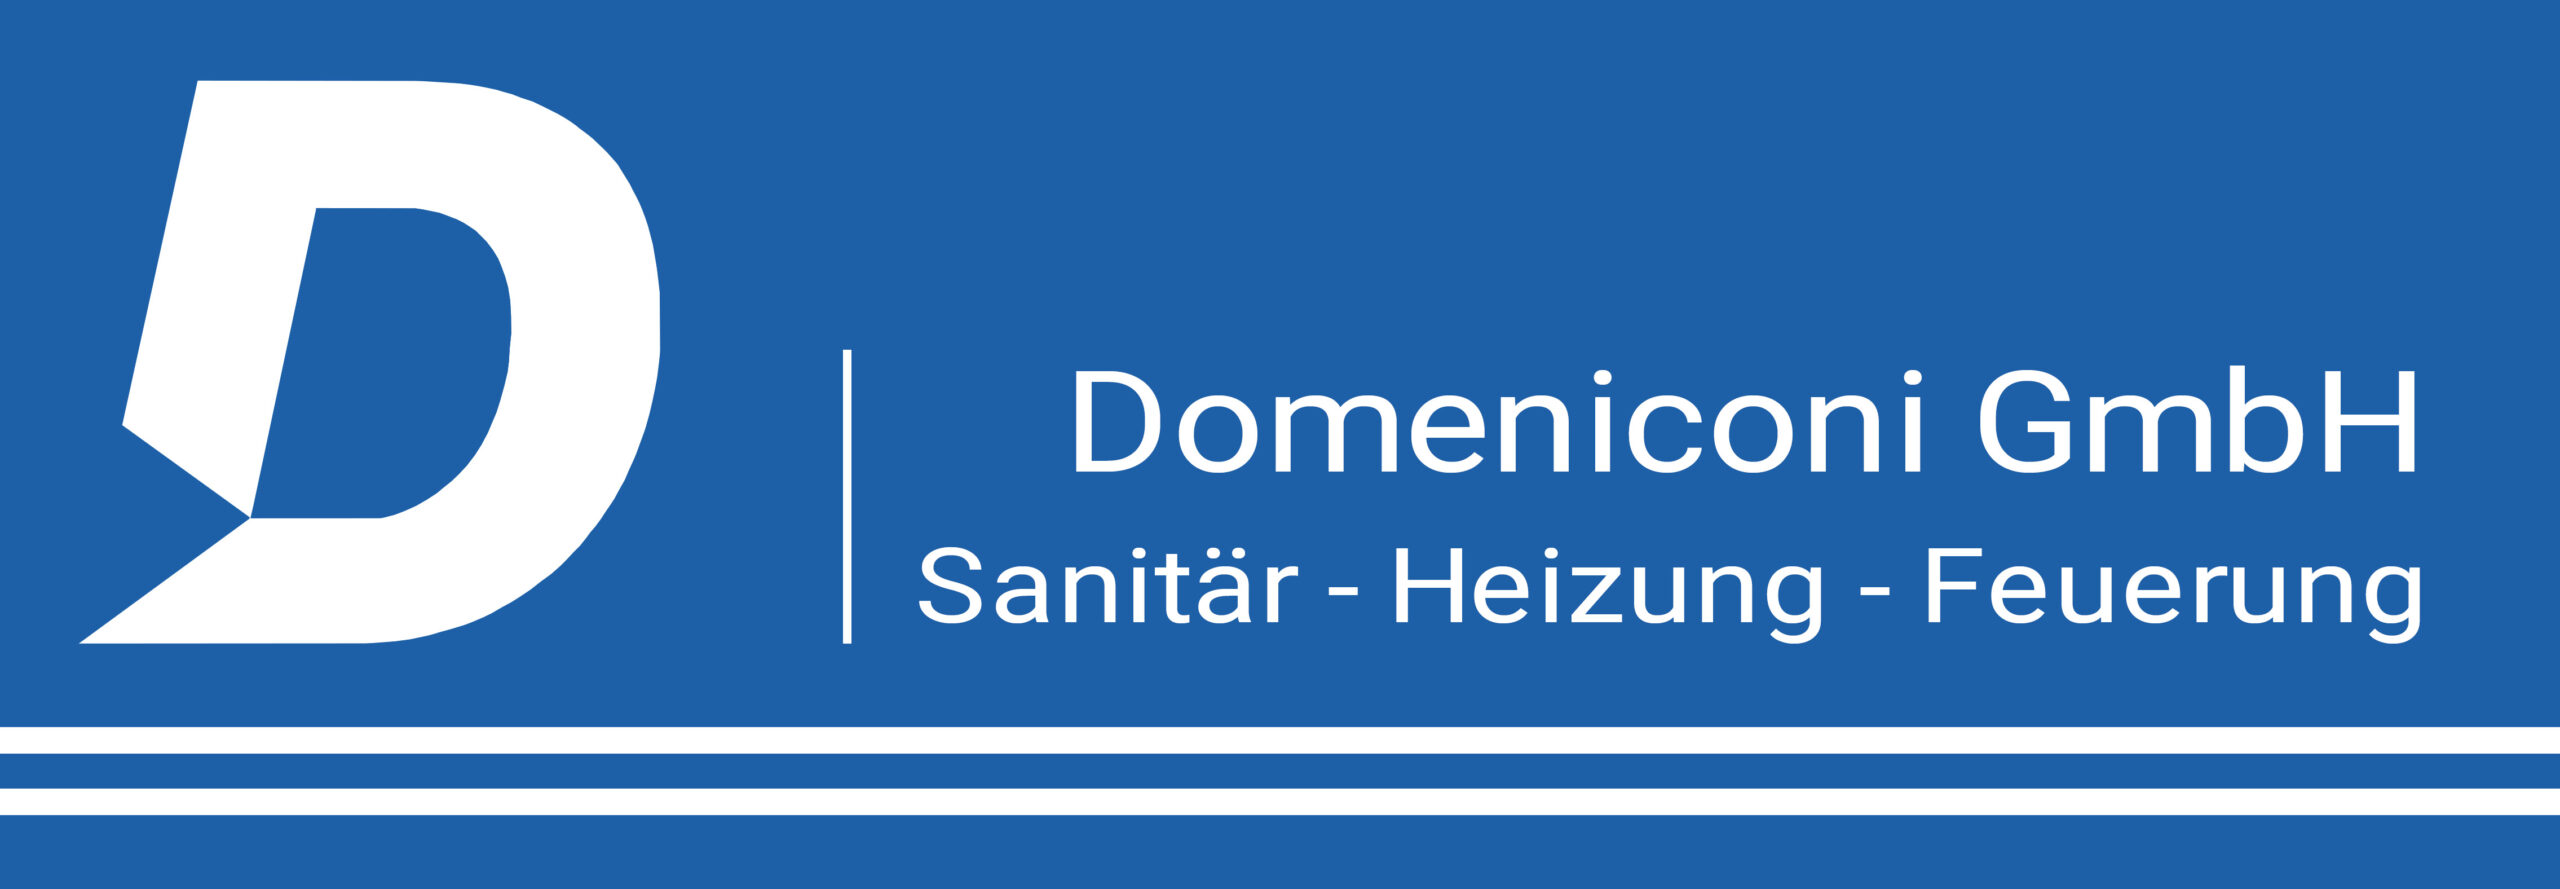 Domeniconi GmbH